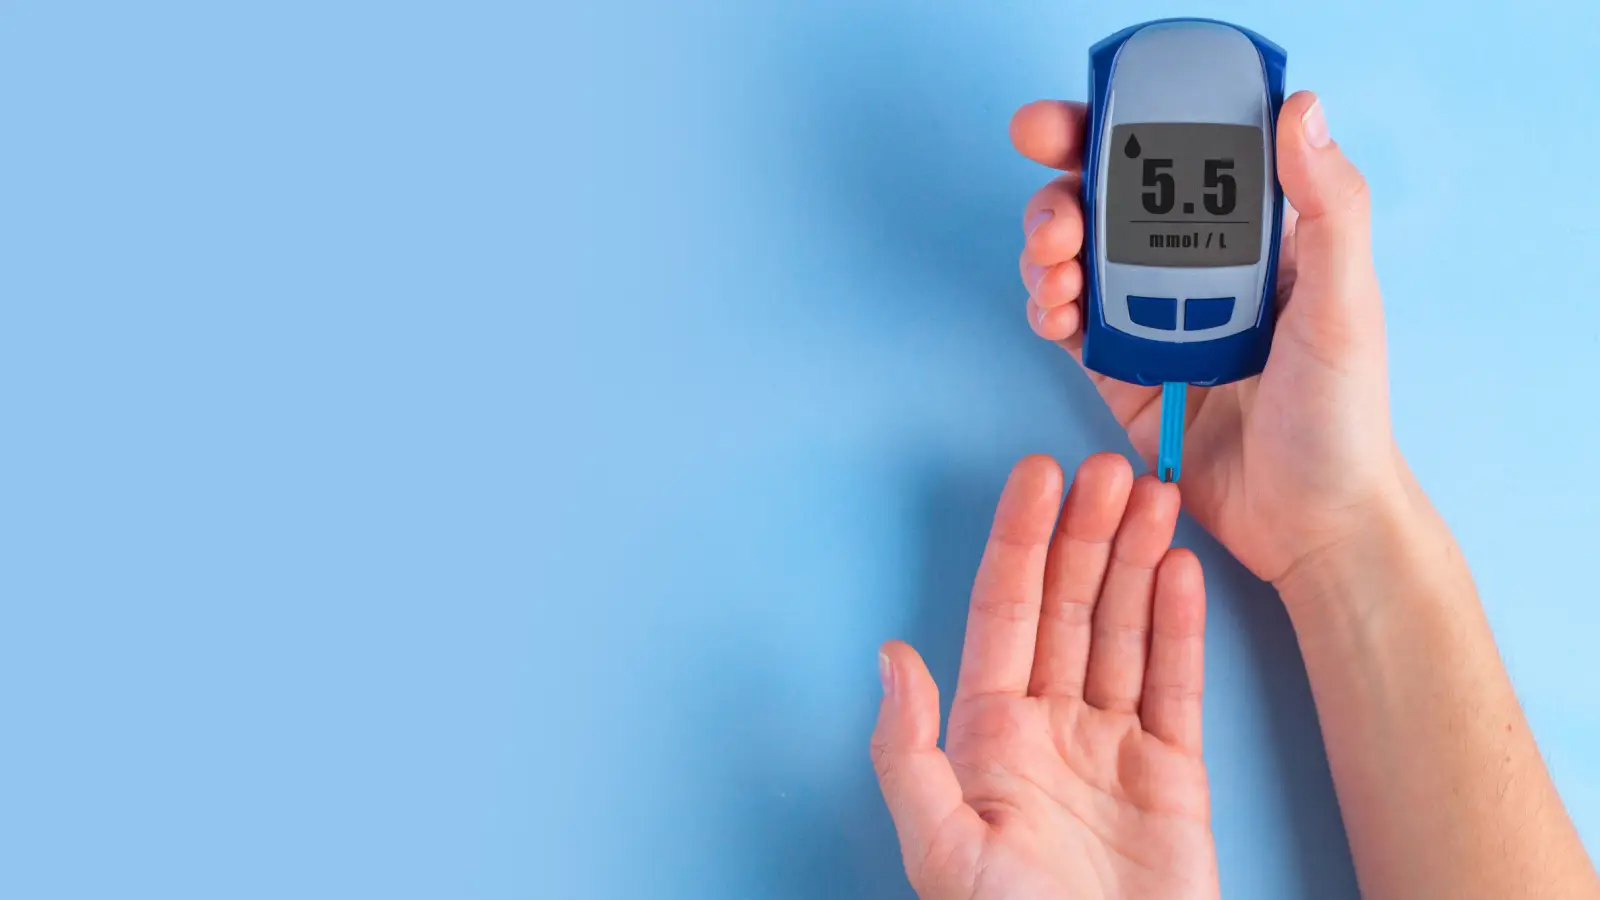 ما أعراض مرض السكري فى بدايته؟ وكيف يمكن الوقاية منه؟